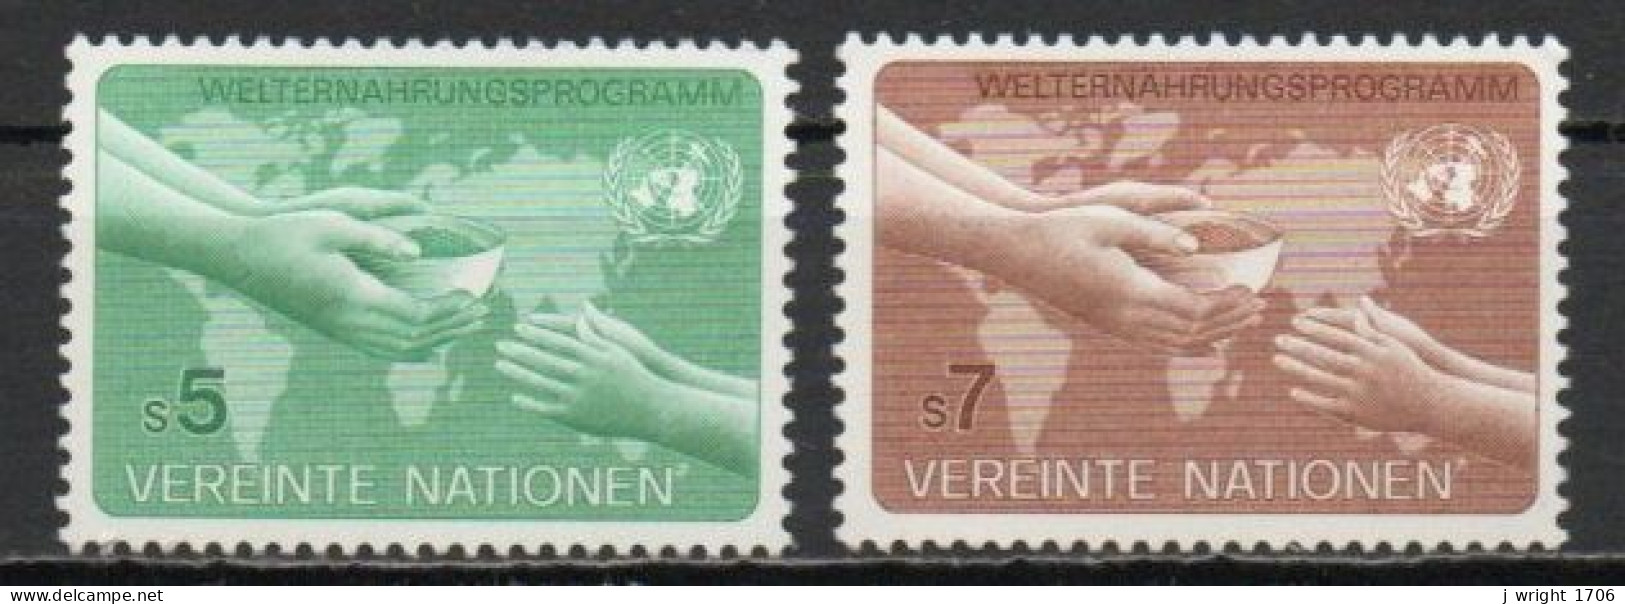 UN/Vienna, 1983, World Food Programme, Set, MNH - Neufs